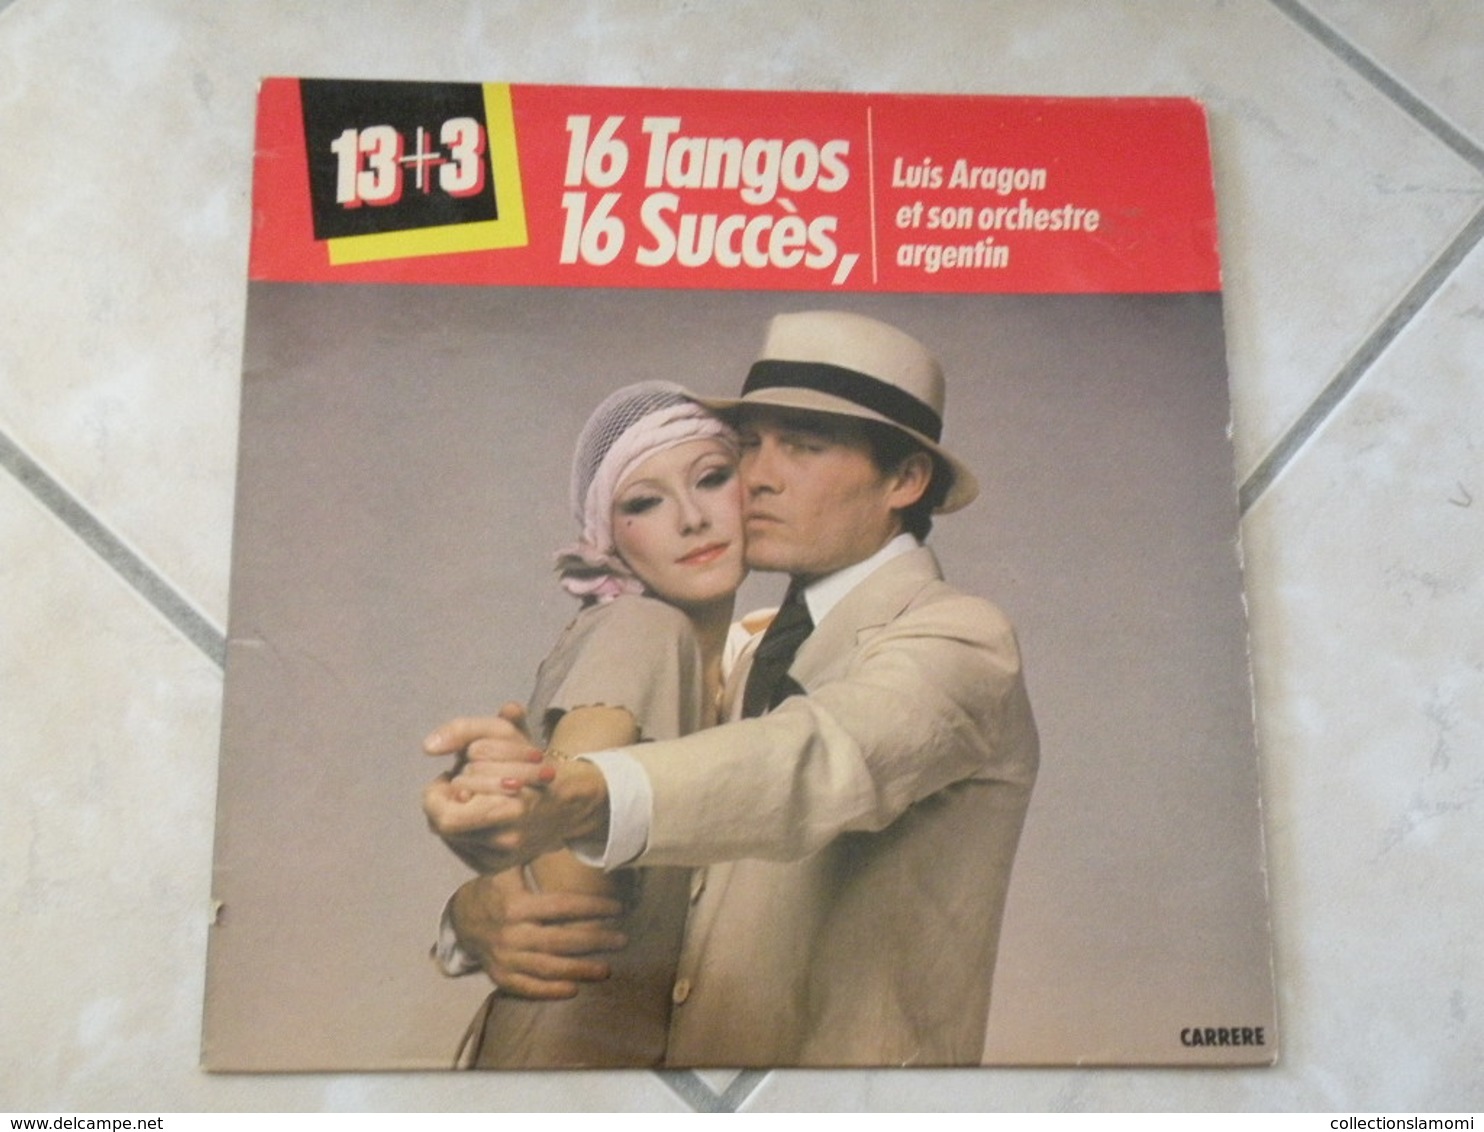 Luis Aragon Et Son Orchestre Argentin (16 Tangos) - (Titres Sur Photos) - Vinyle 33 T LP - Cómica